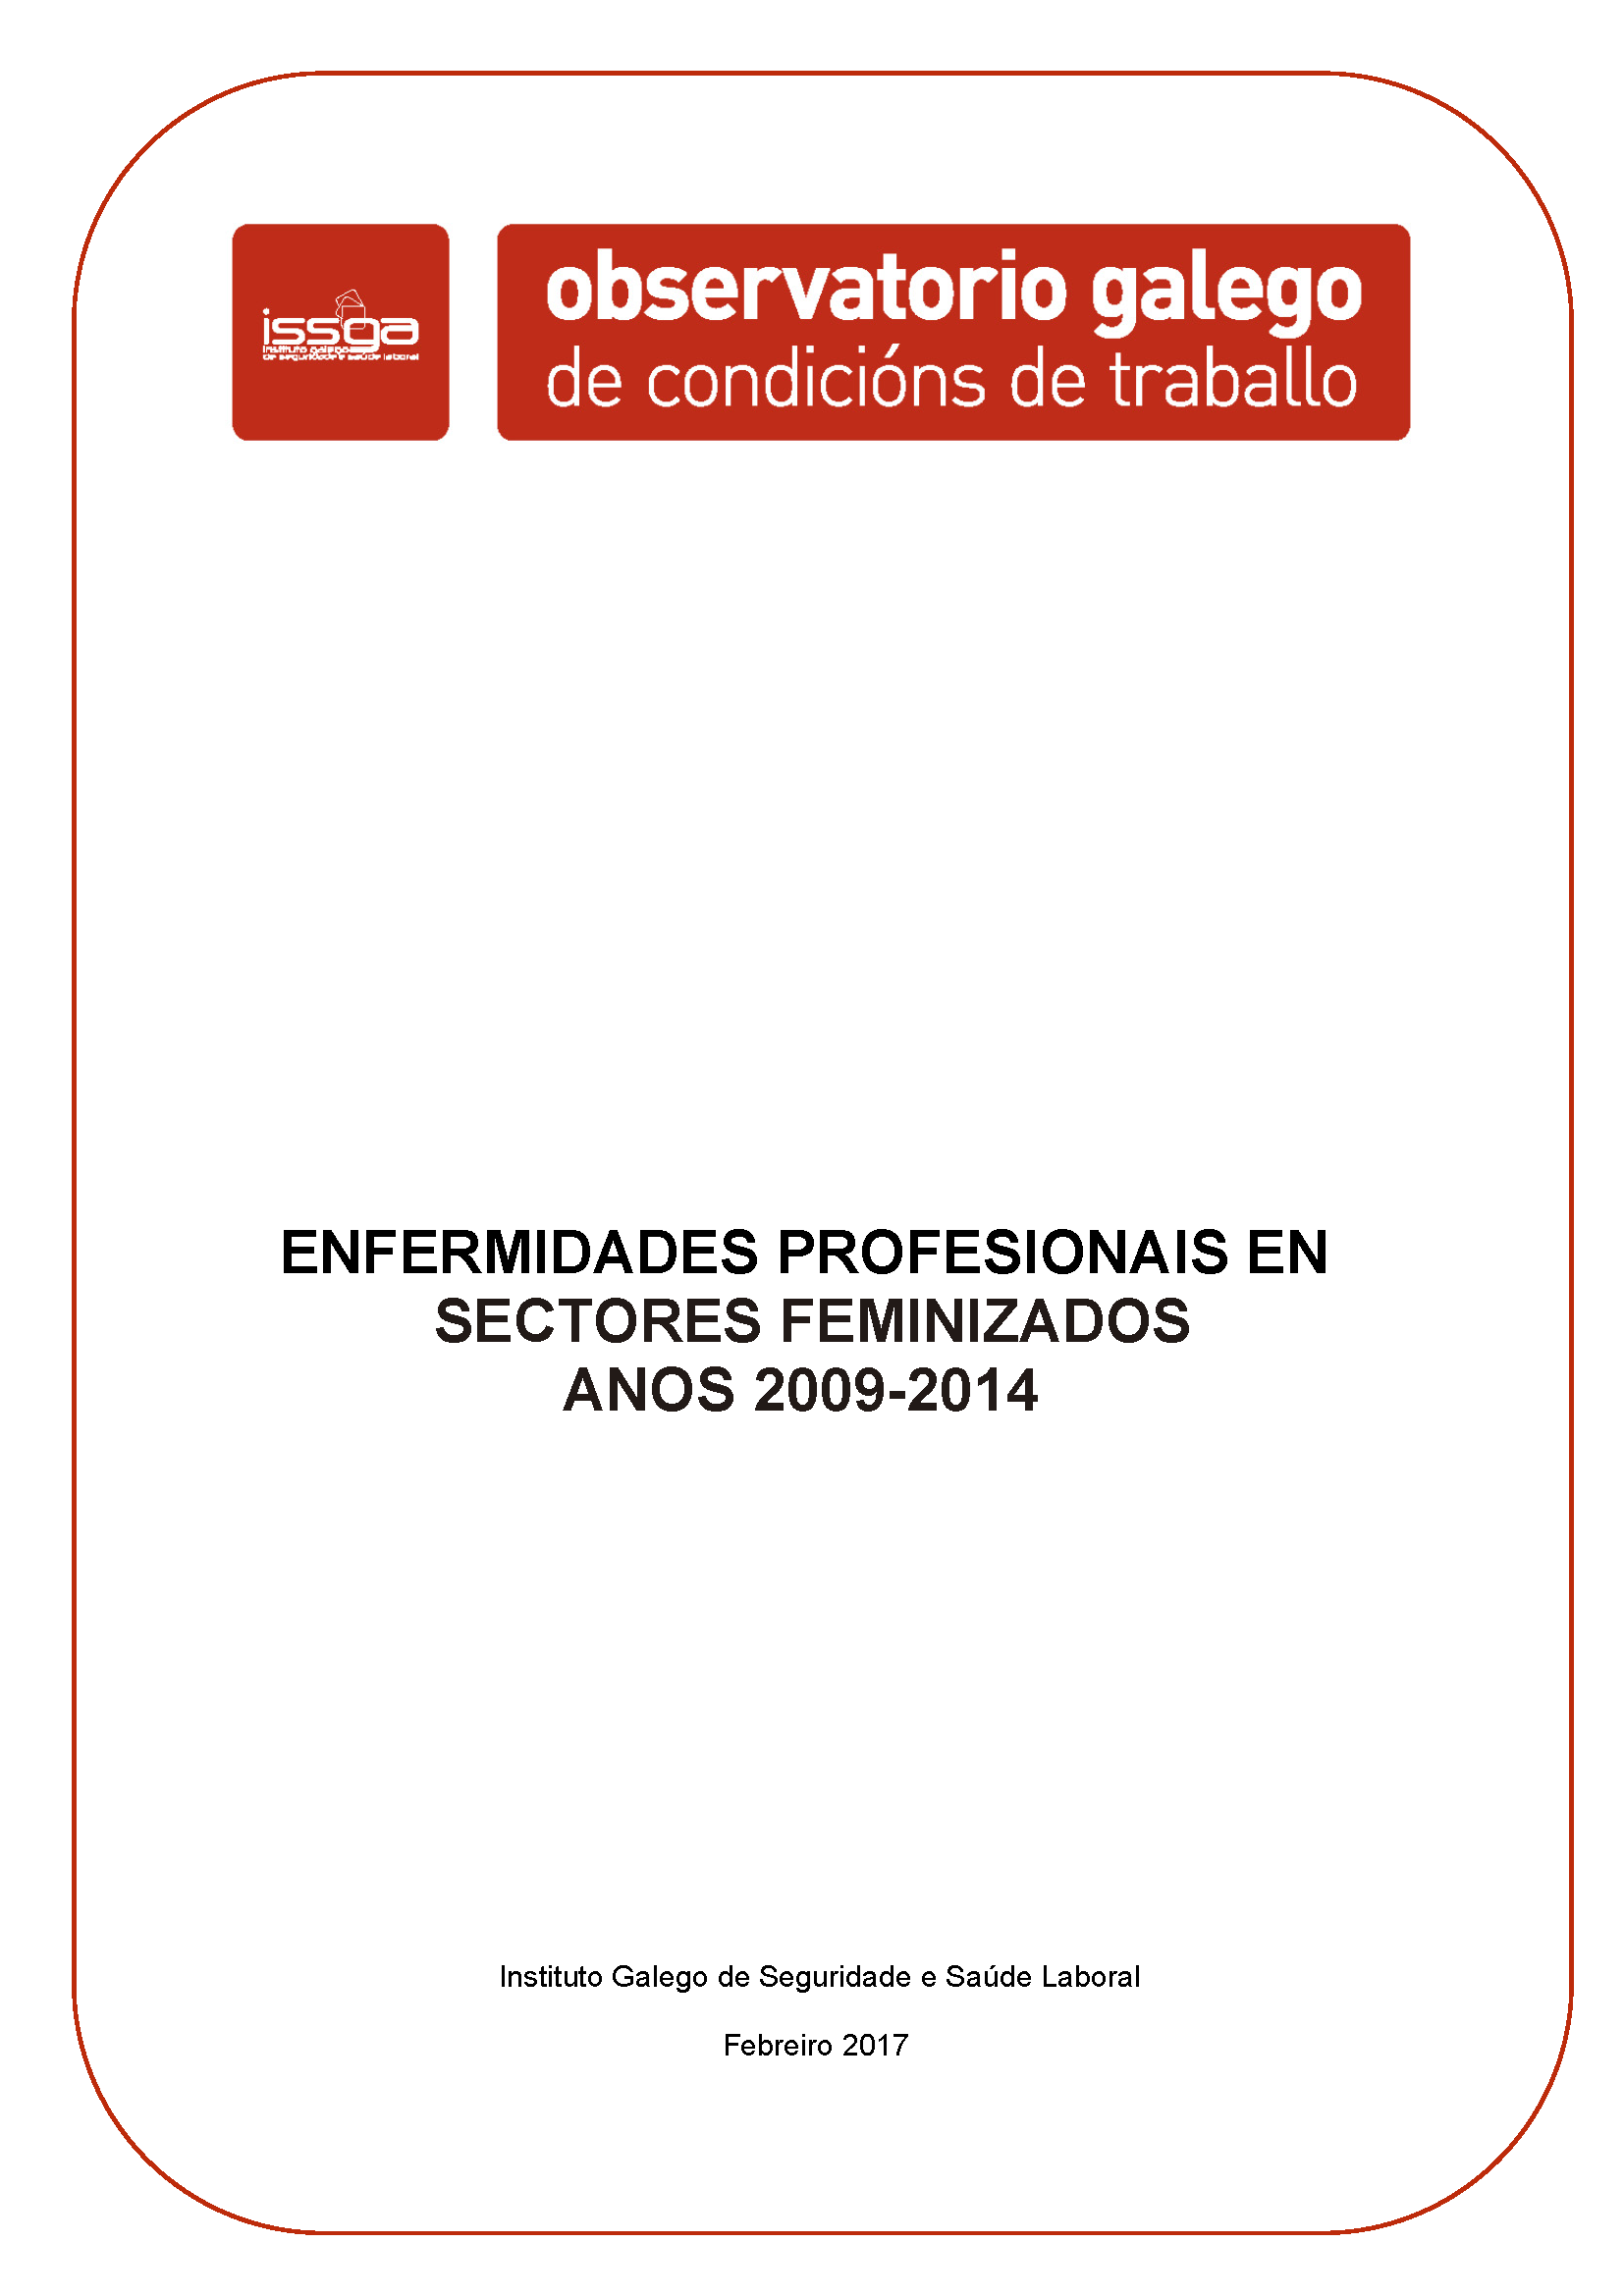 Enfermidades profesionais en sectores feminizados ANOS 2009-2014